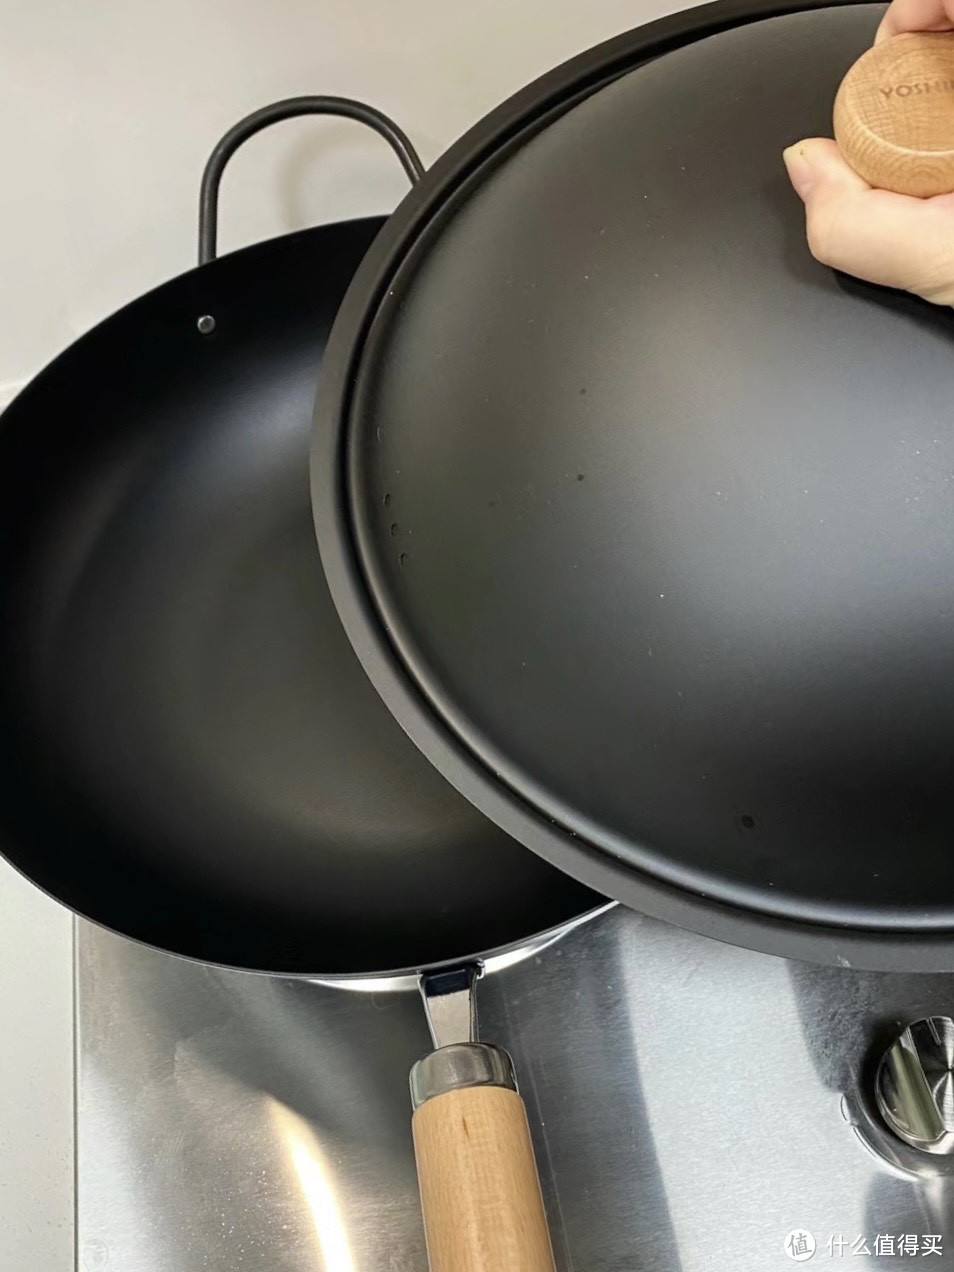 分享一下我的厨房神器——铁锅！